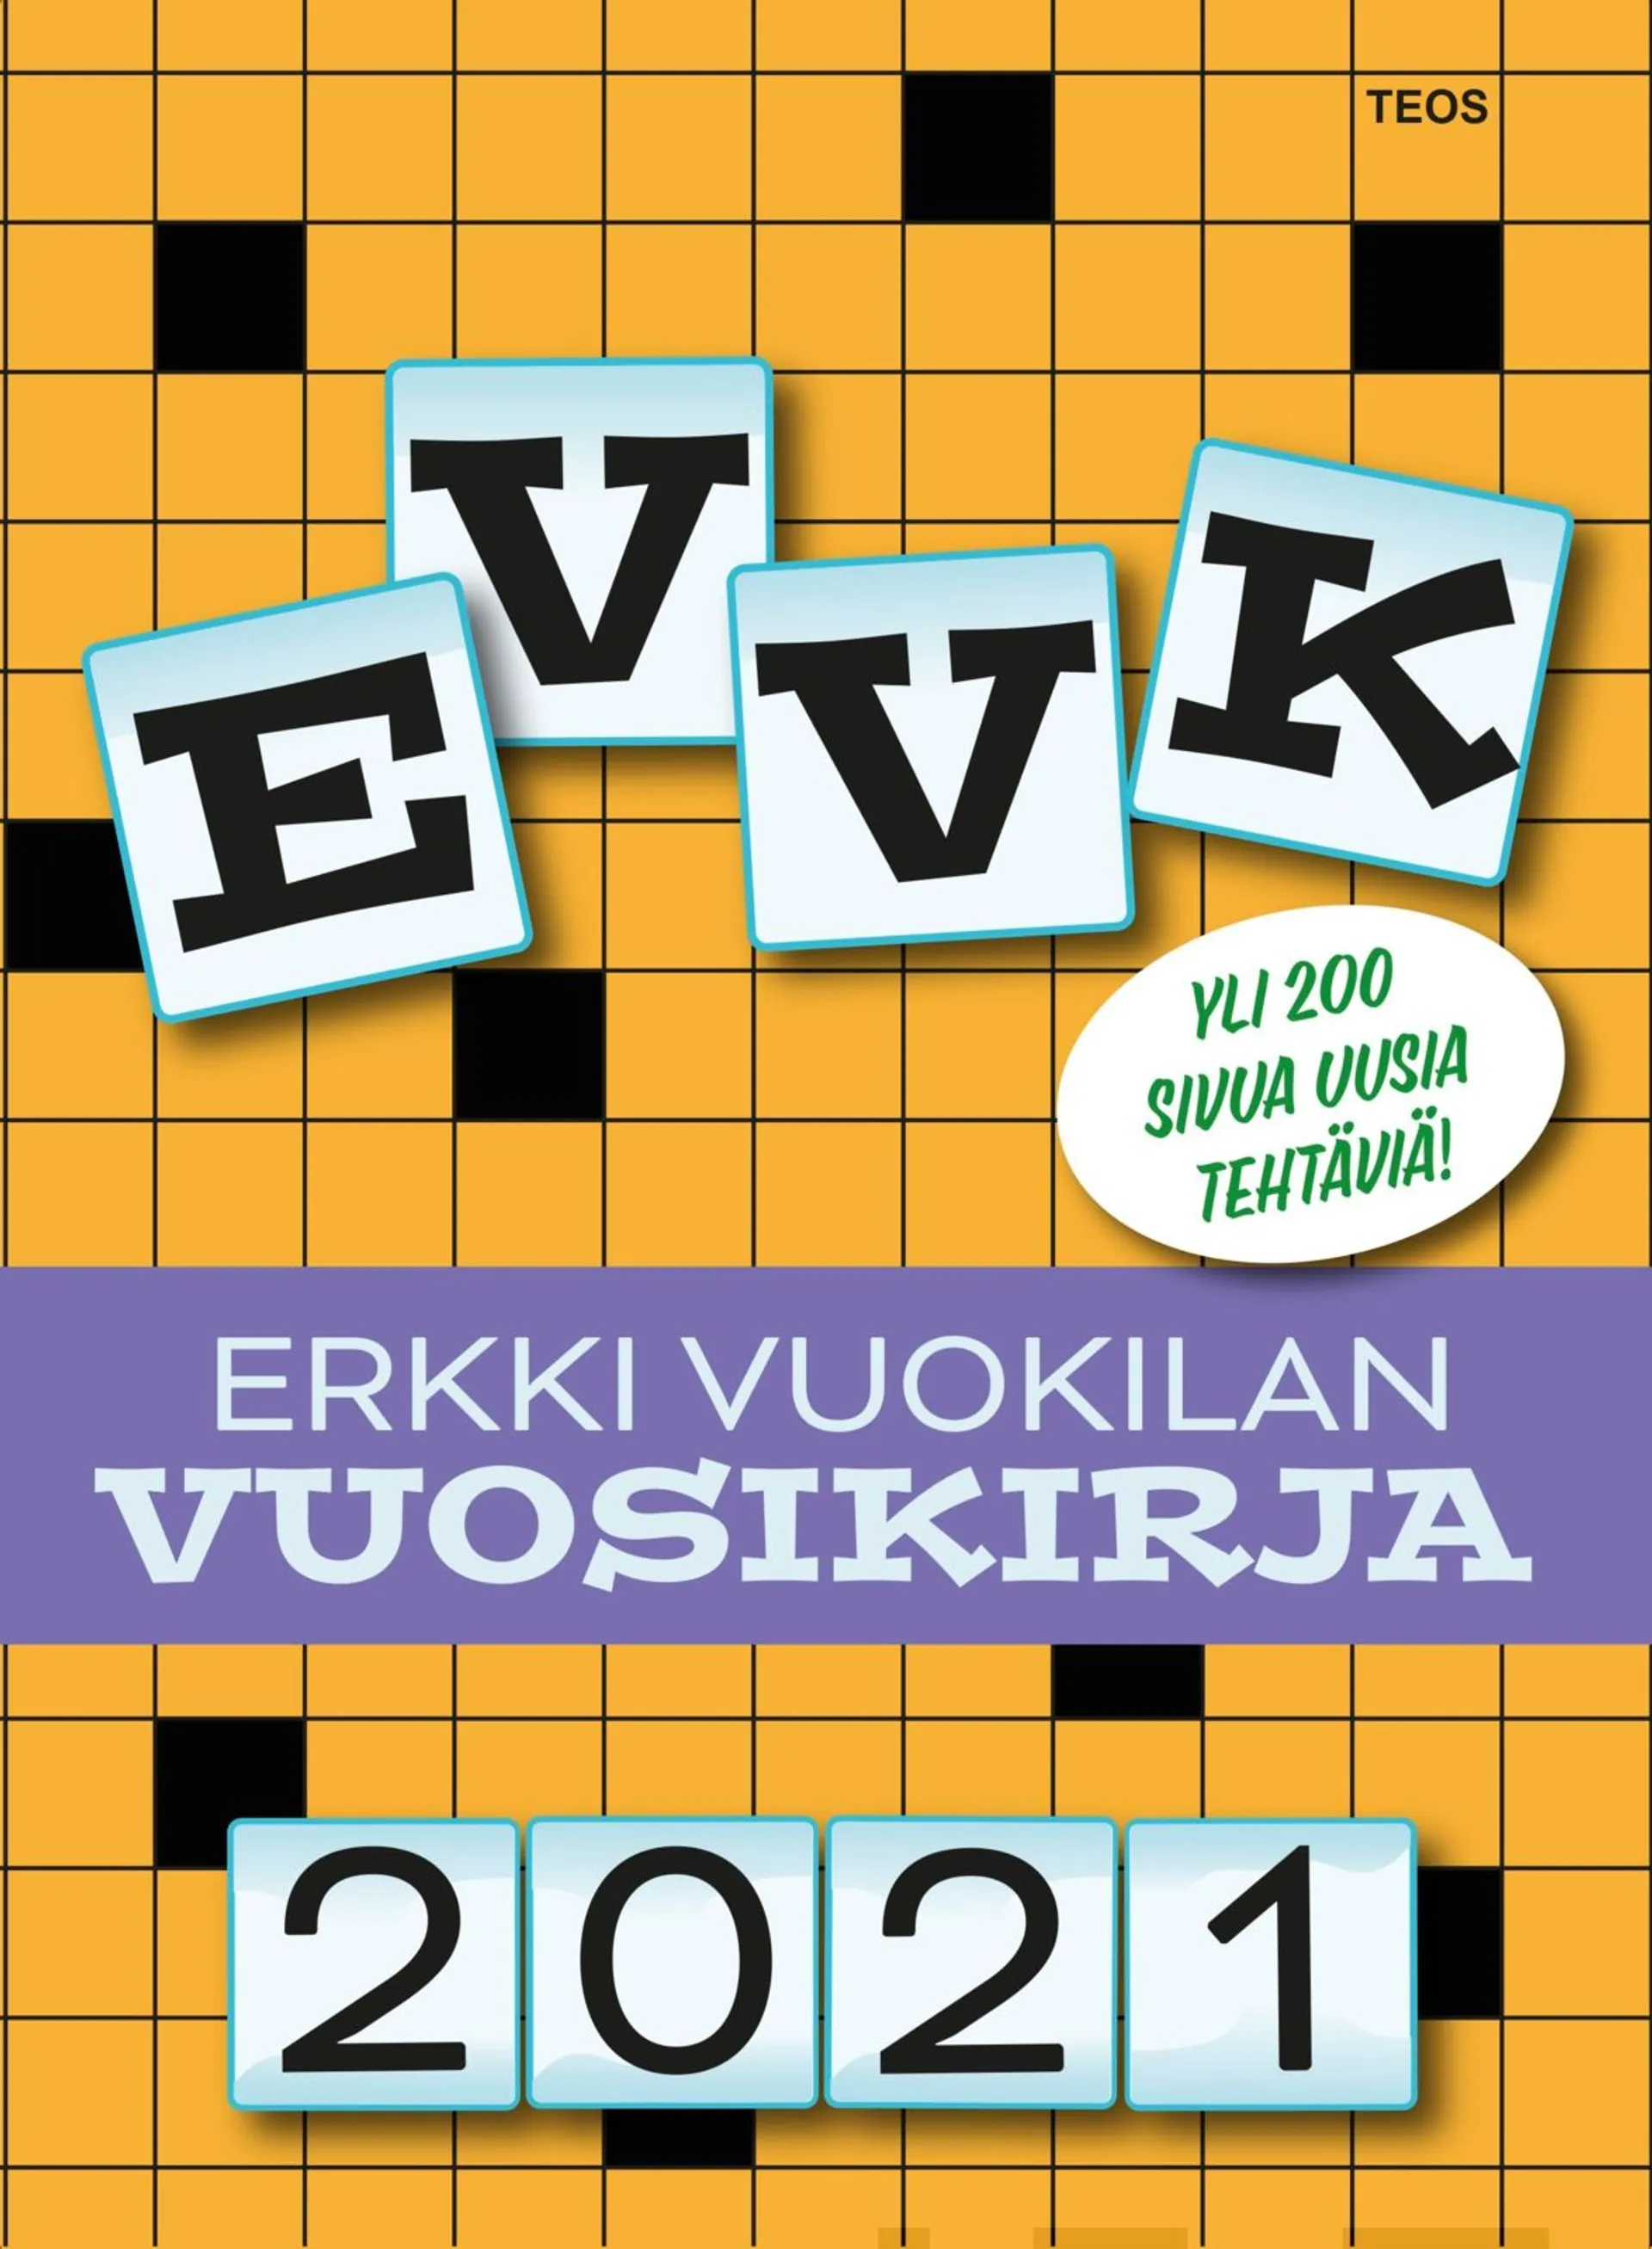 Vuokila, EVVK - Erkki Vuokilan vuosikirja 2021